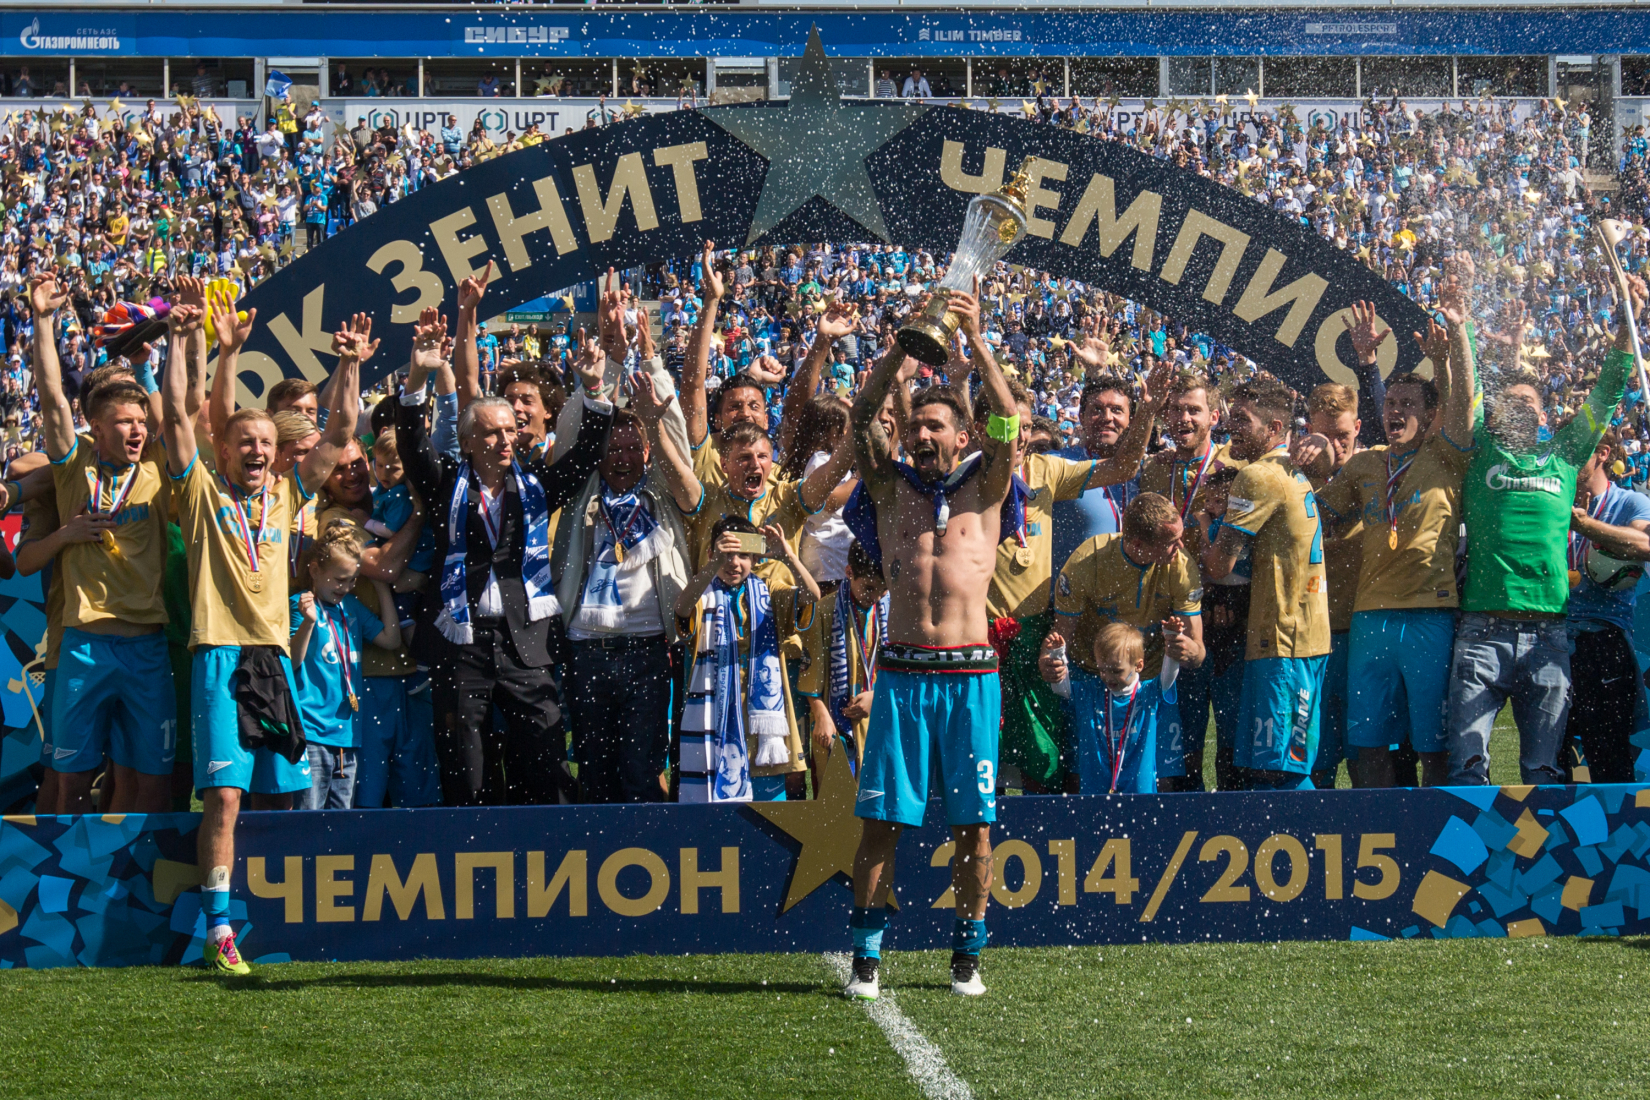 Зенит чемпион 2014-15